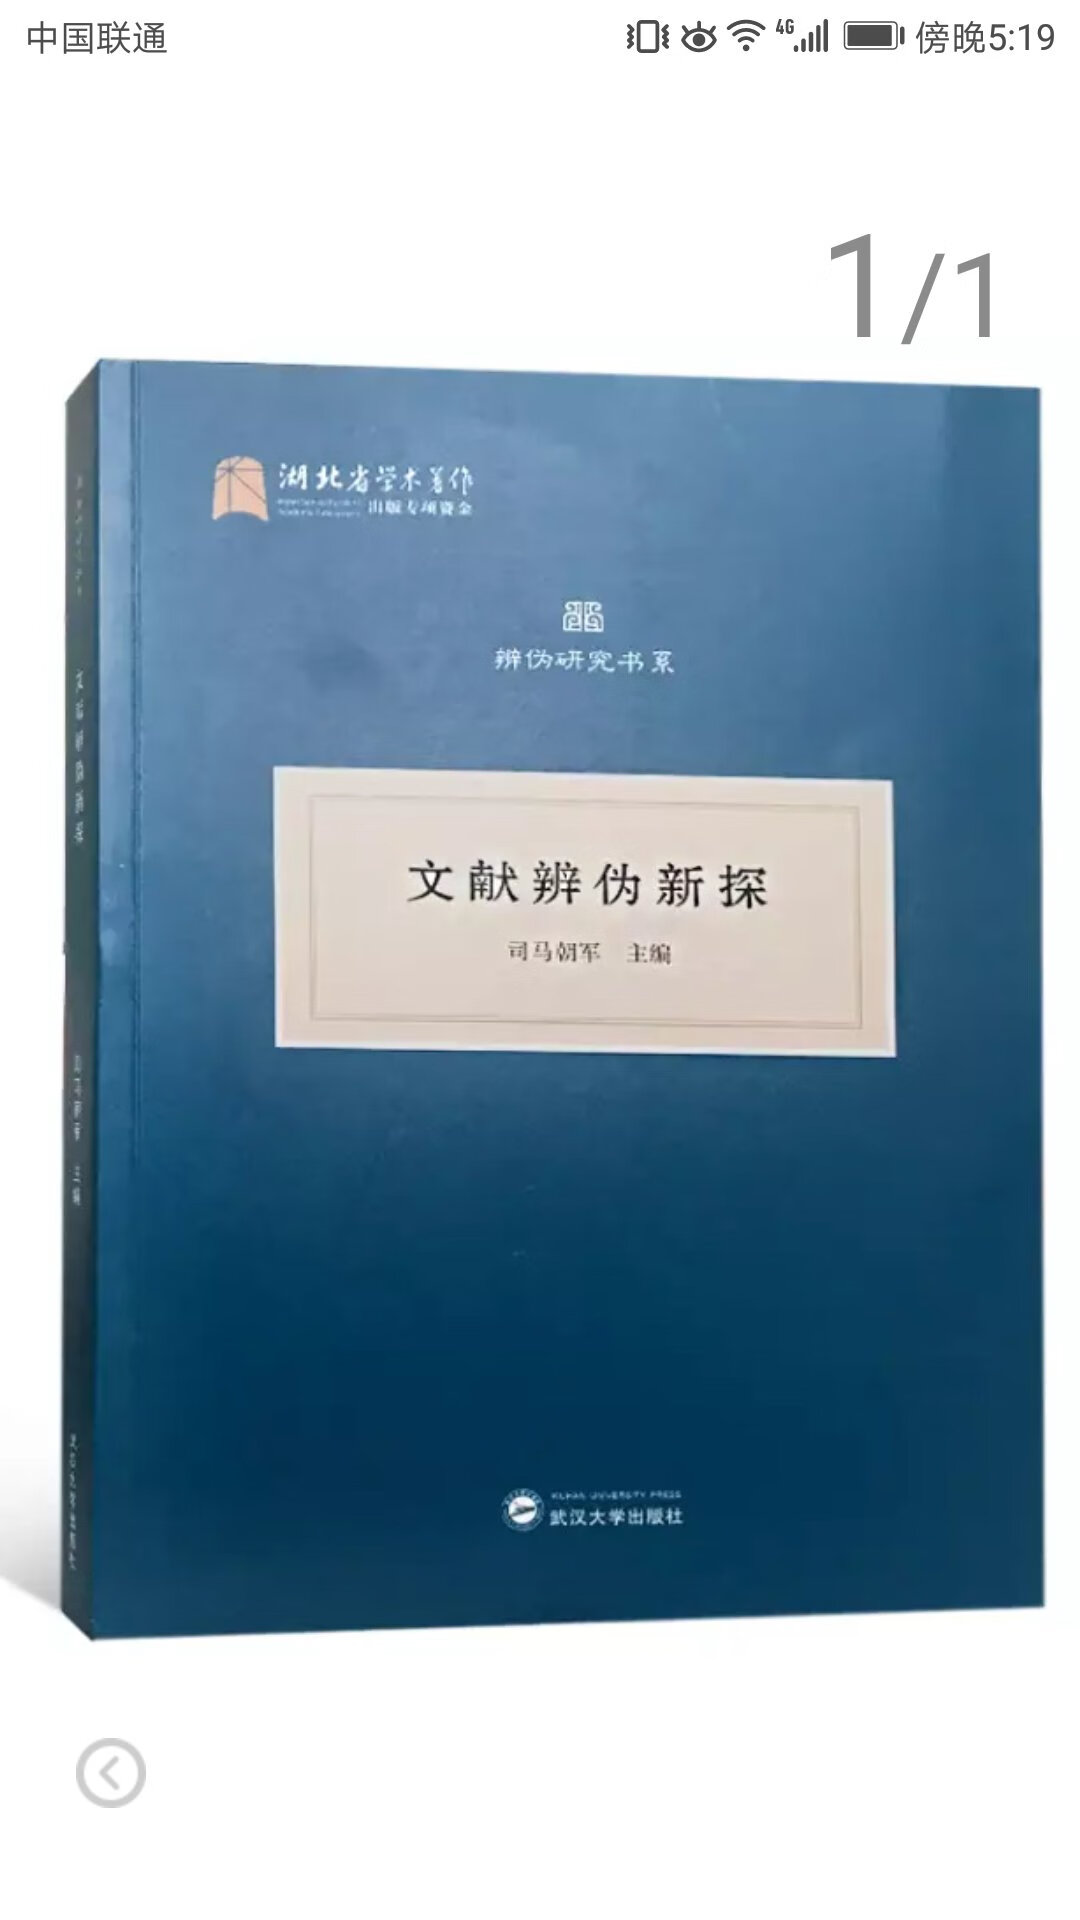 武汉大学出版社推出的湖北省学术著作系列丛书，平装大16开，书脊锁线纸质优良，排版印刷得体大方，活动期间价格优惠，送货速度也很快，非常满意。